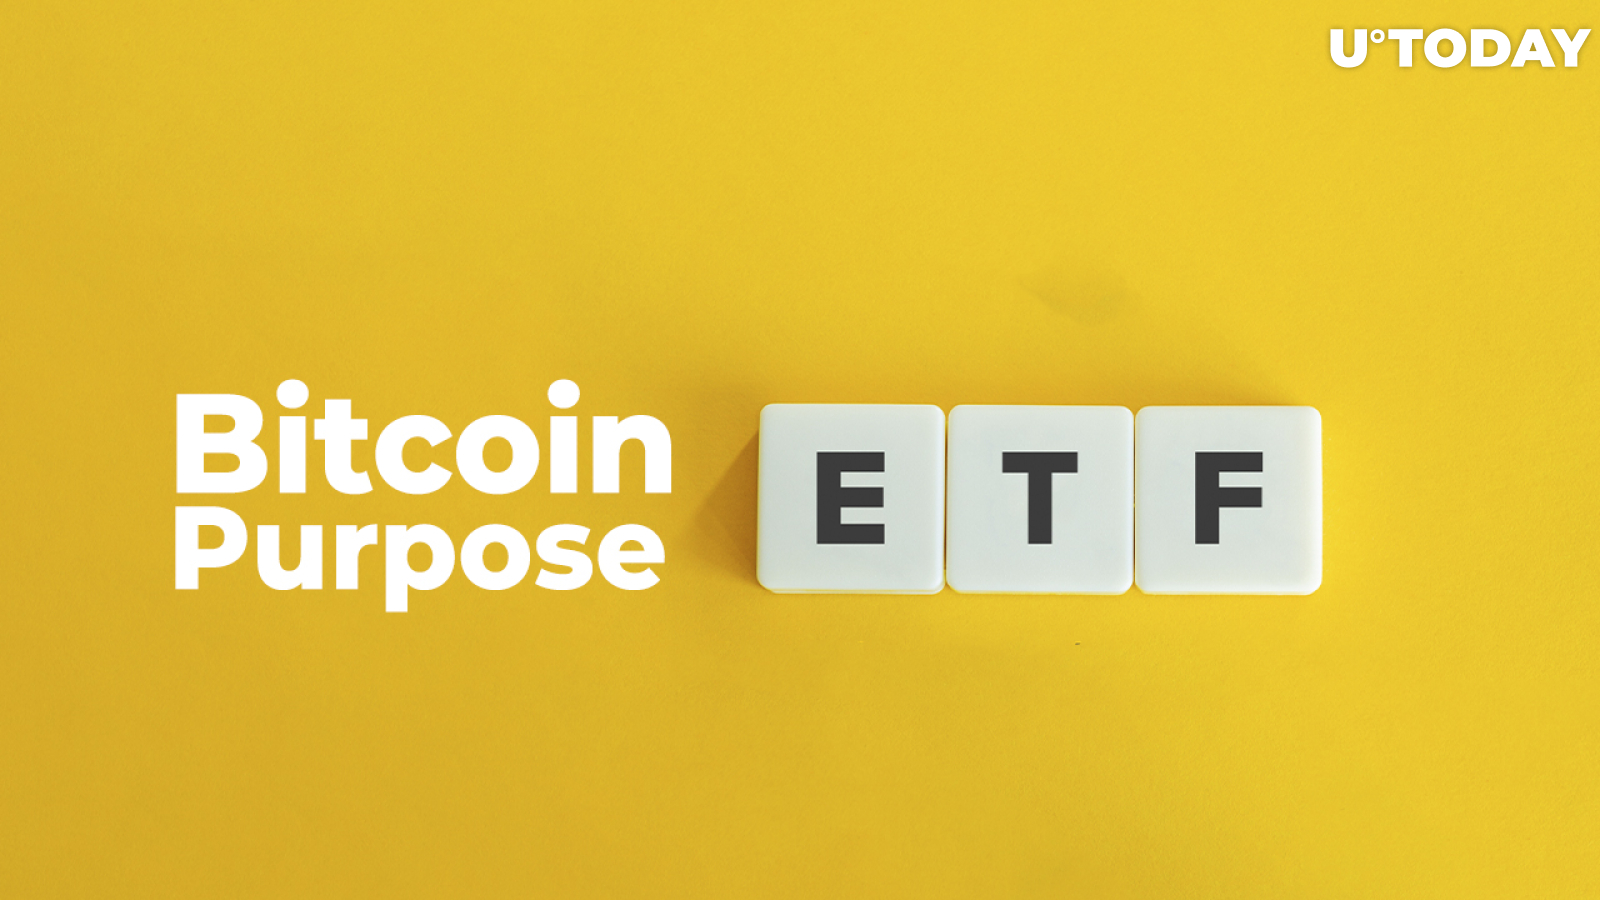 Bitcoin Purpose ETF Faces Record-Breaking Inflows Despite Bitcoin's Drop to $36,900